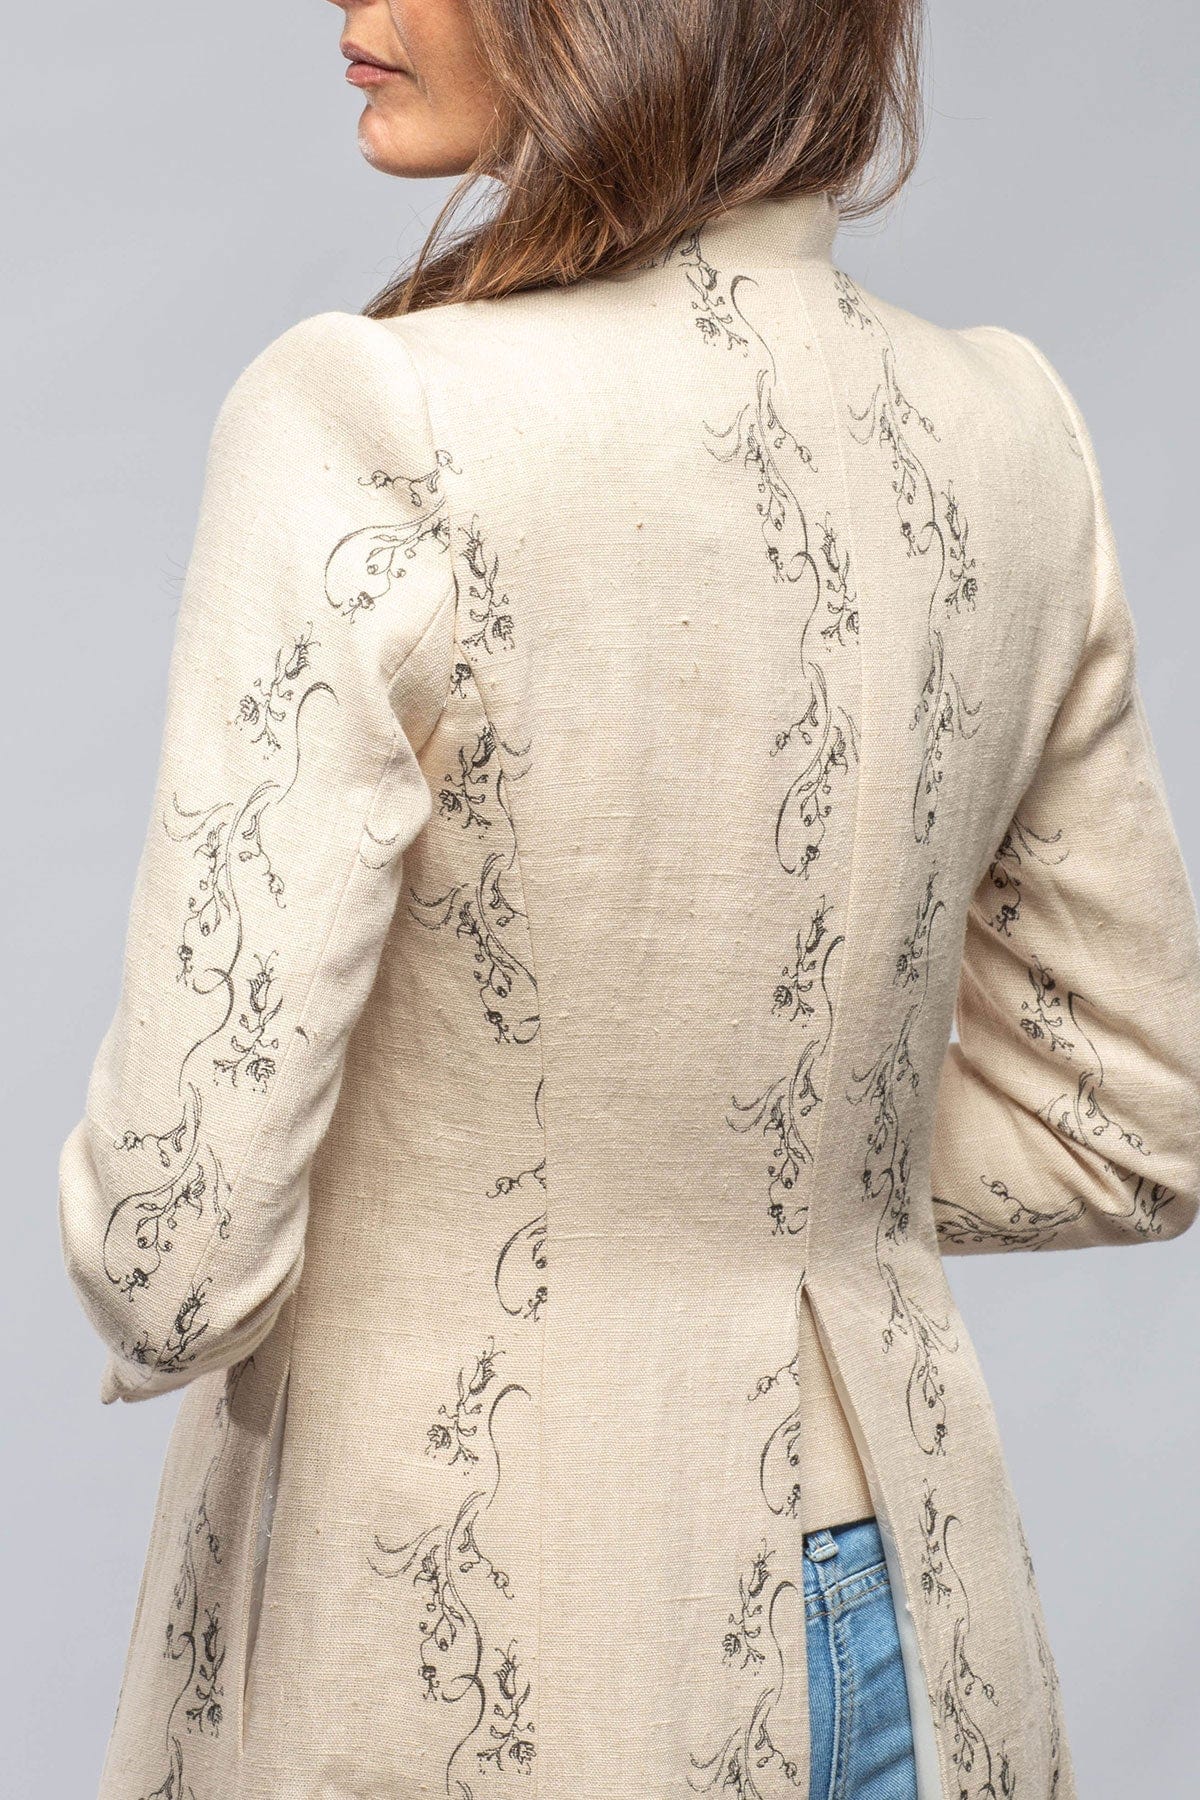 Marbella Flower Print Linen Coat - AXEL'S